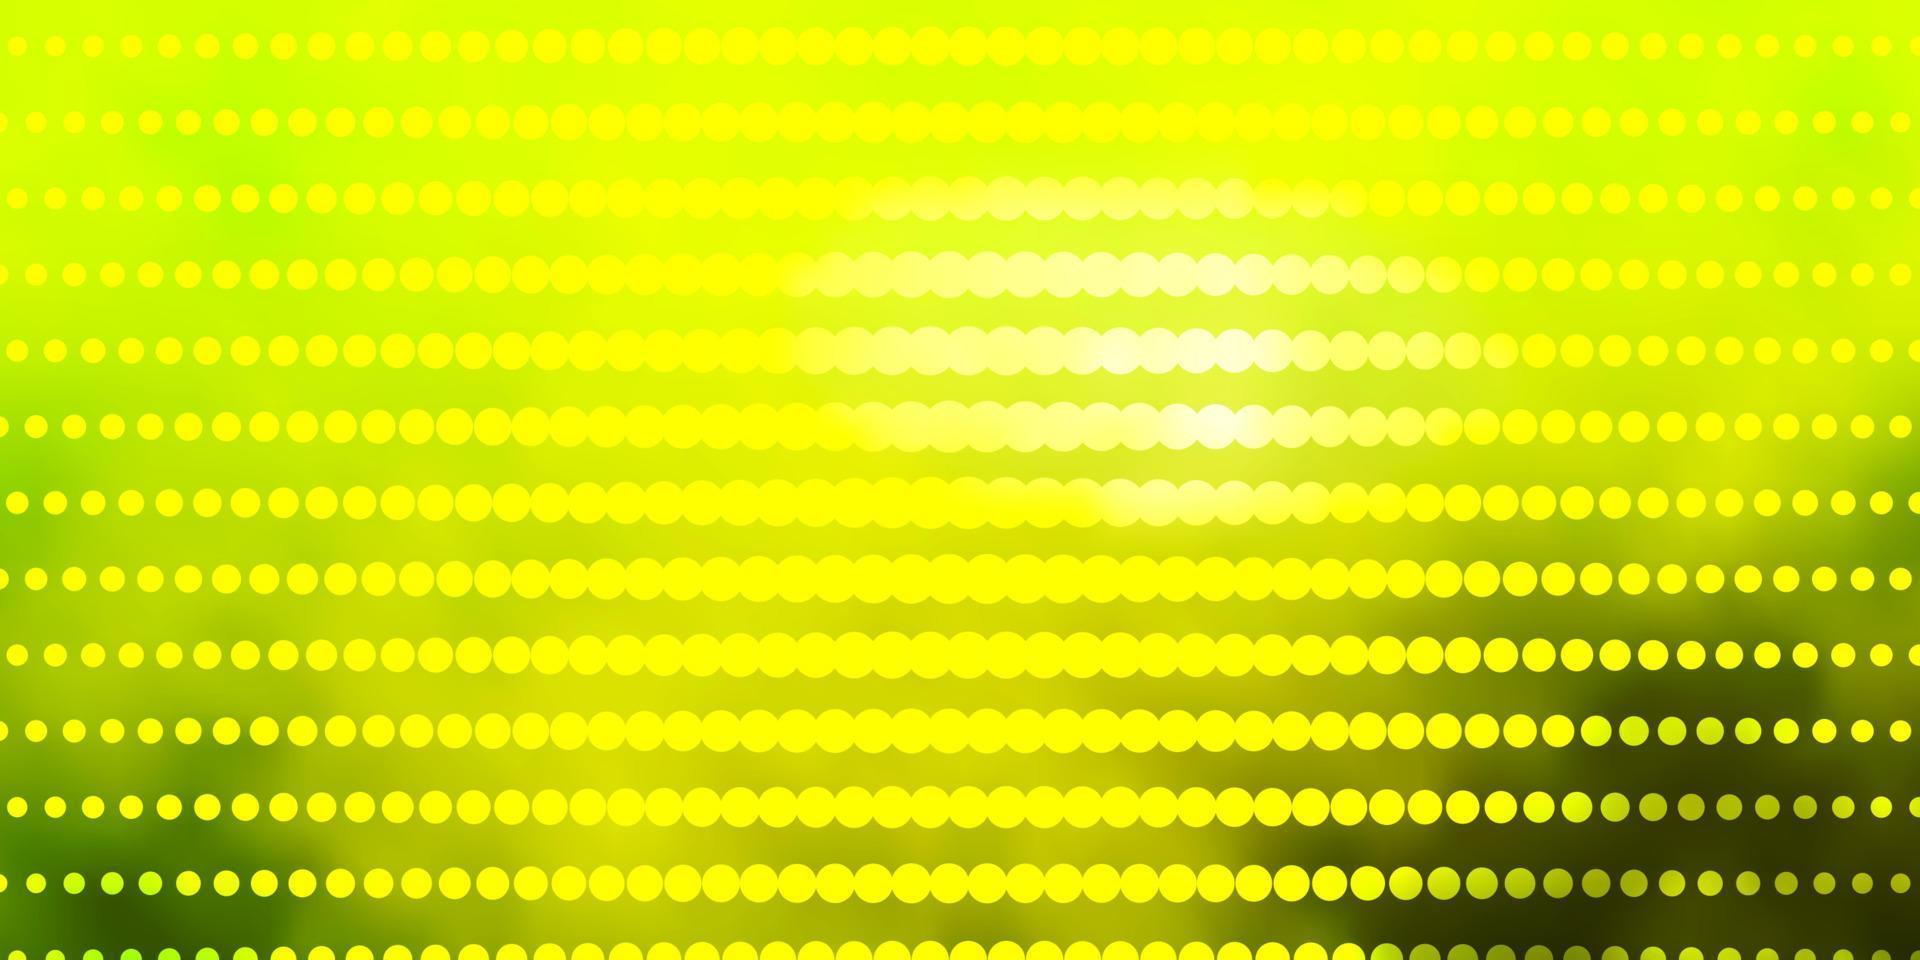 lichtgroen, geel vectormalplaatje met cirkels. vector